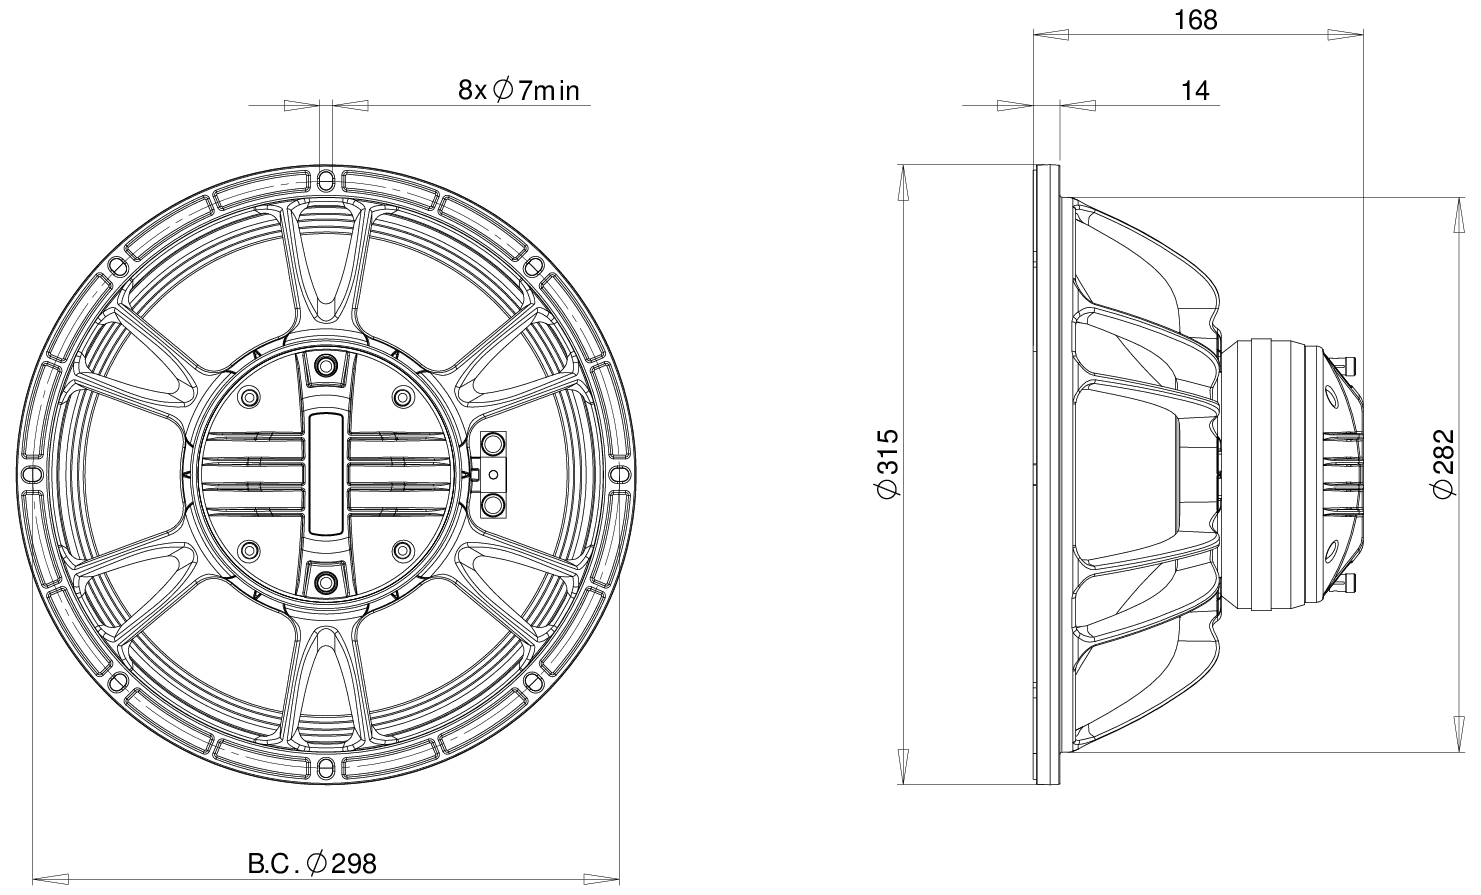 B&C Speaker 12CXN76 Dimensions